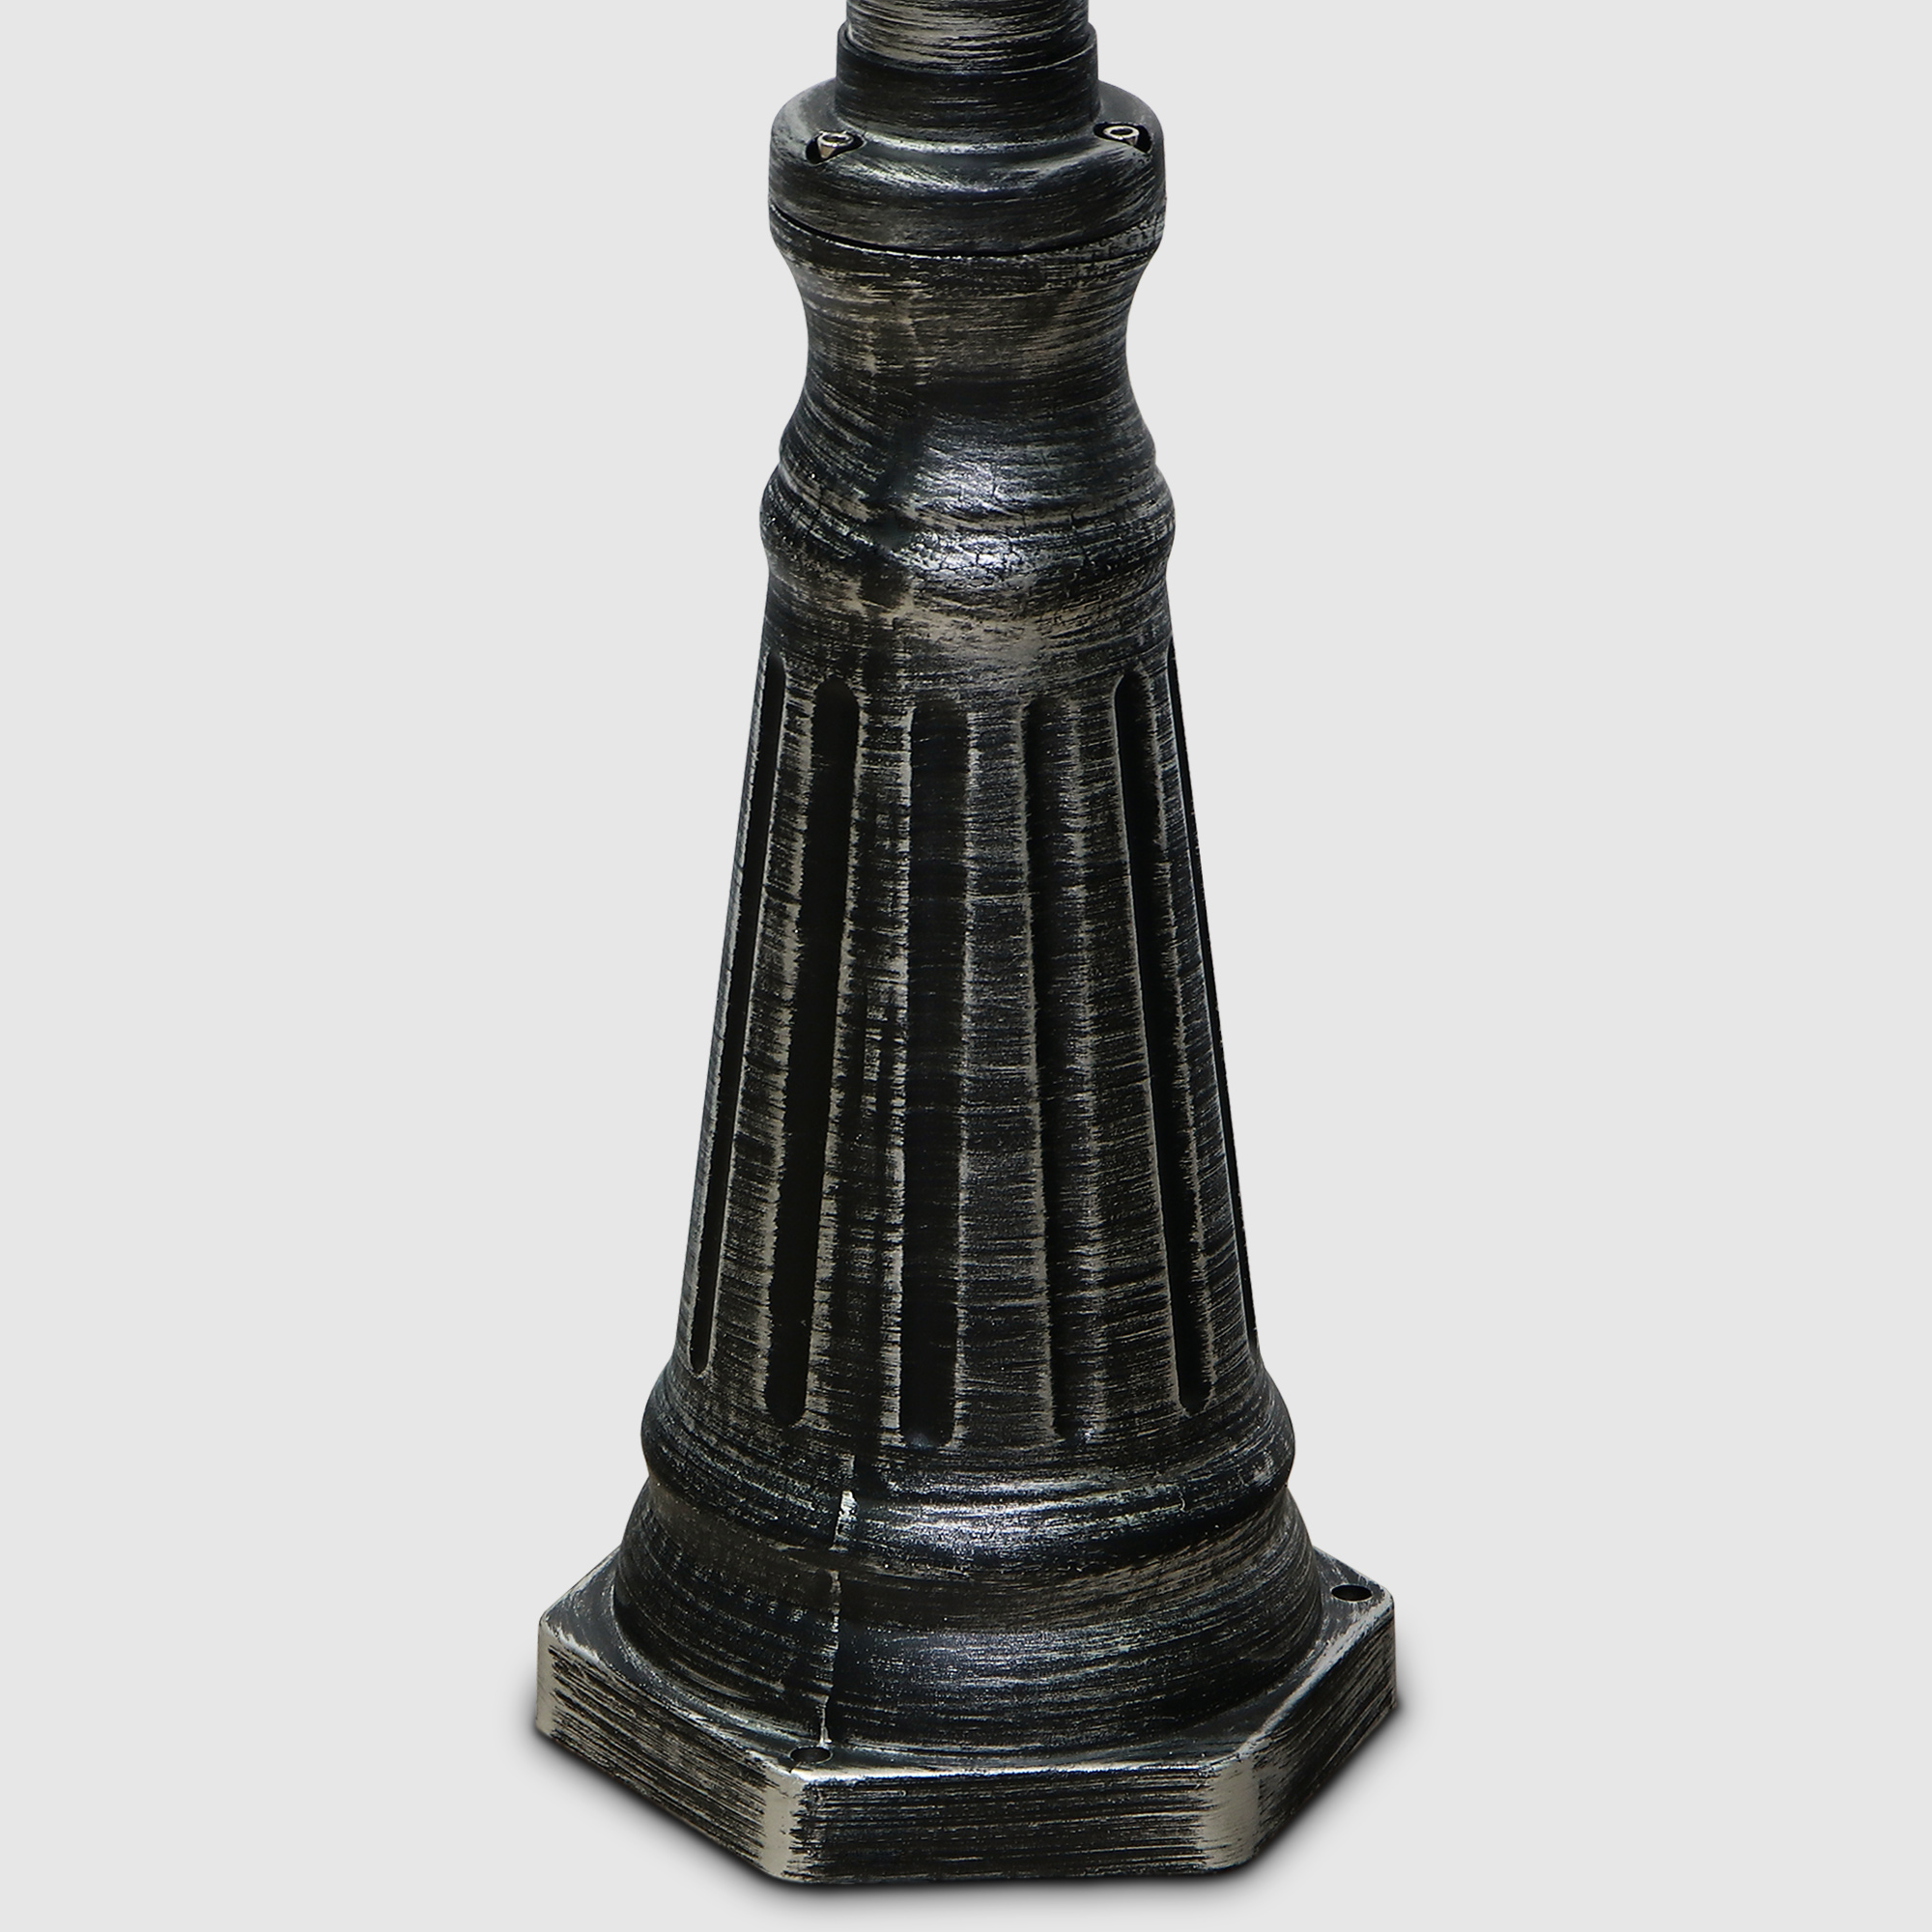 Светильник напольный Amber Lamp 9002B садовый черное серебро - фото 6